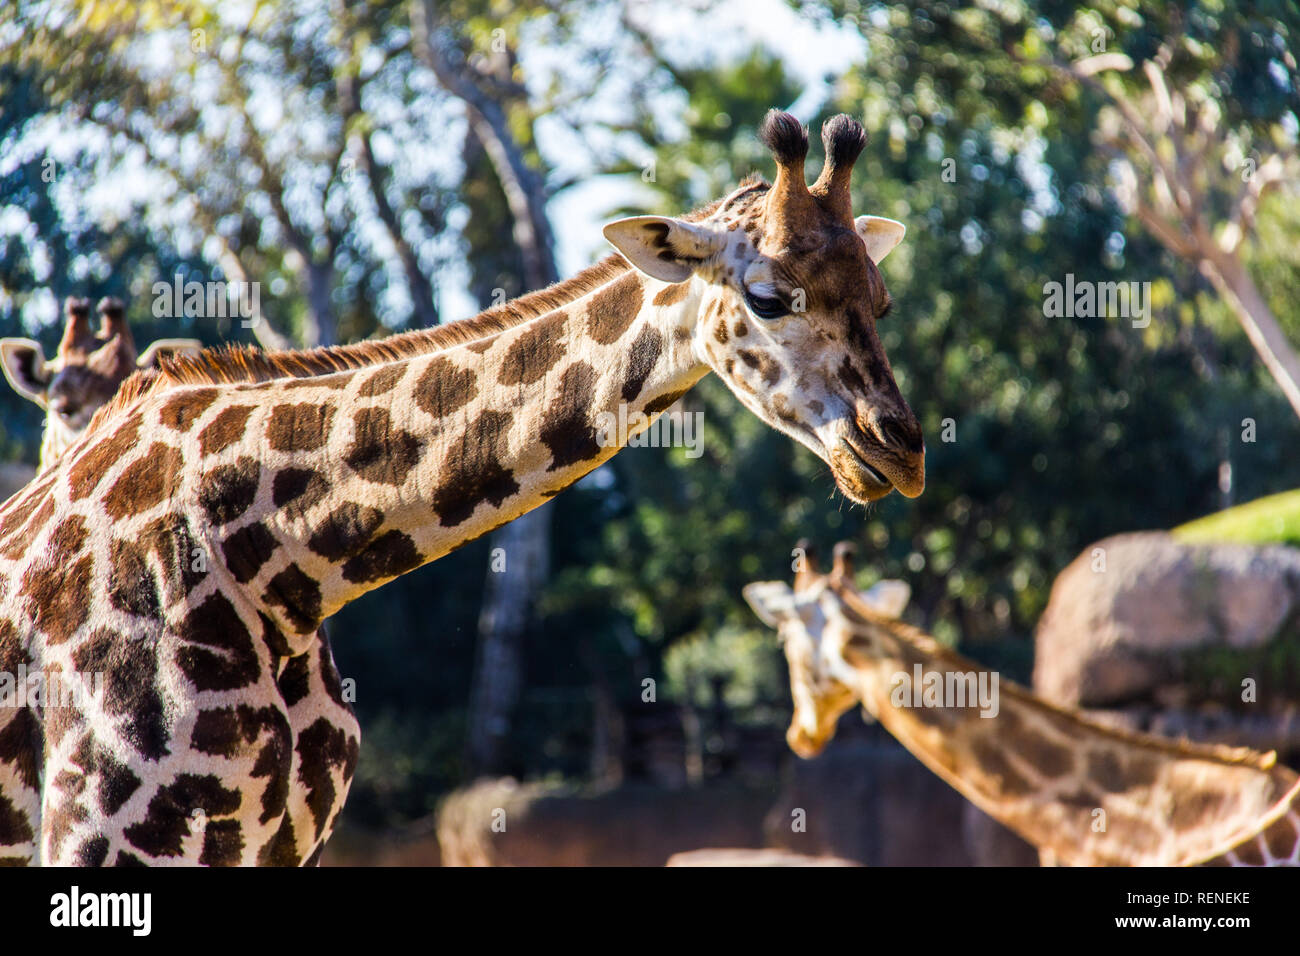 A giraffe, giraffa camelopardalis, in a zoo of Spain Stock Photo